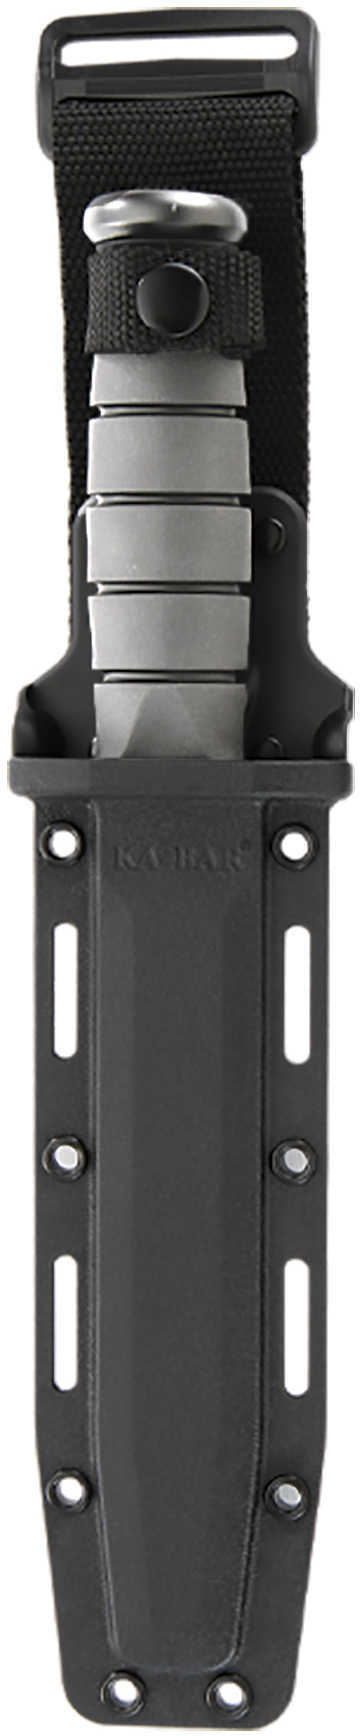 Ka-Bar Large Hard Sheath Black 1216